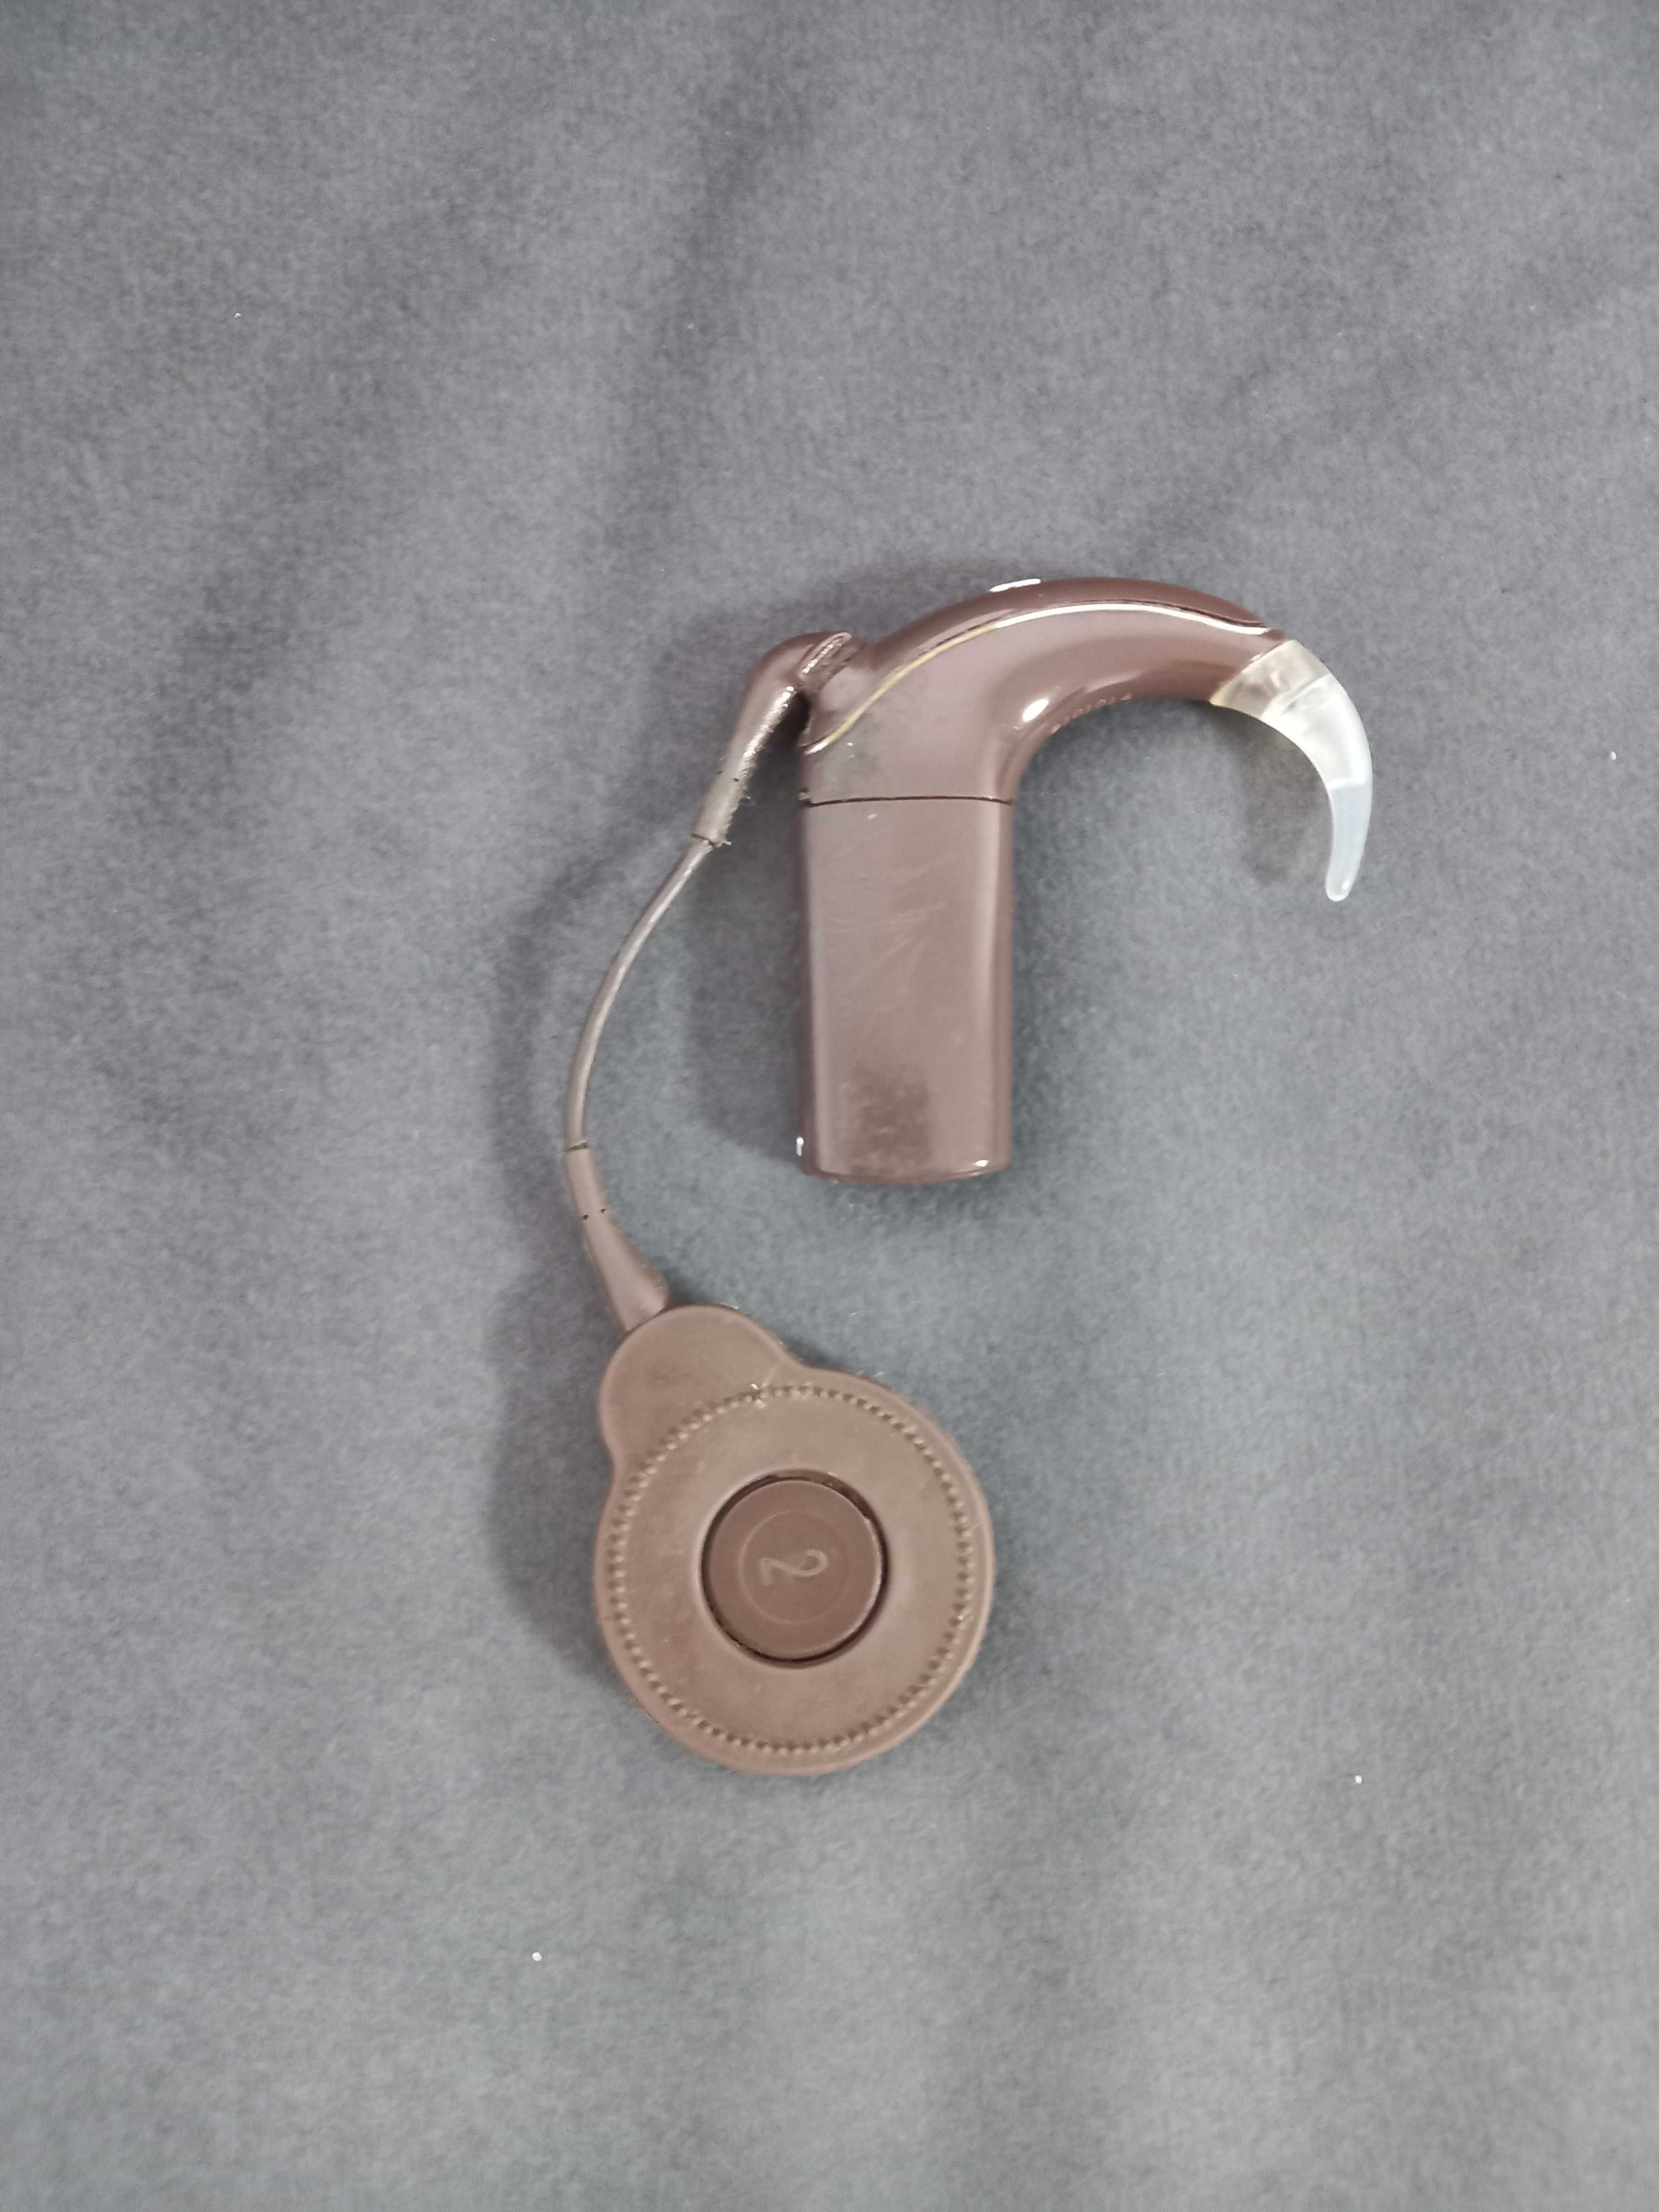 Procesor mowy Cochlear Nucleus 7 CP1000 dźwięku ,  implant slimakowy,